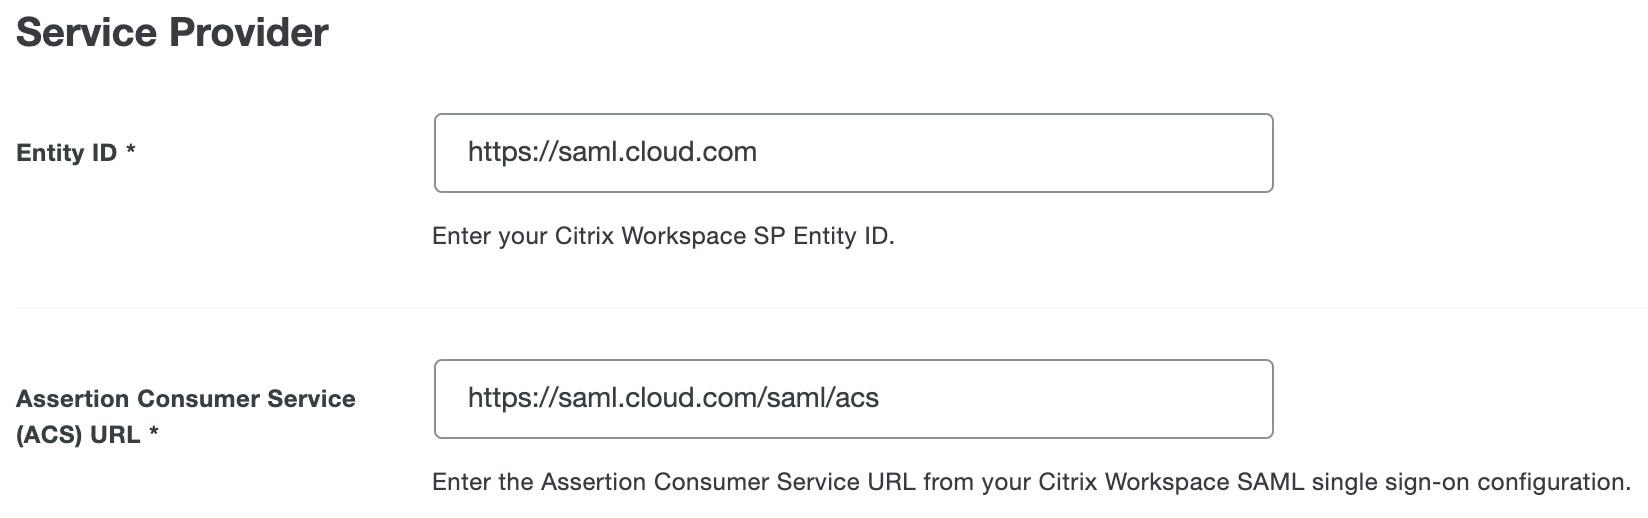 Duo Citrix Workspace Service Provider URL fields